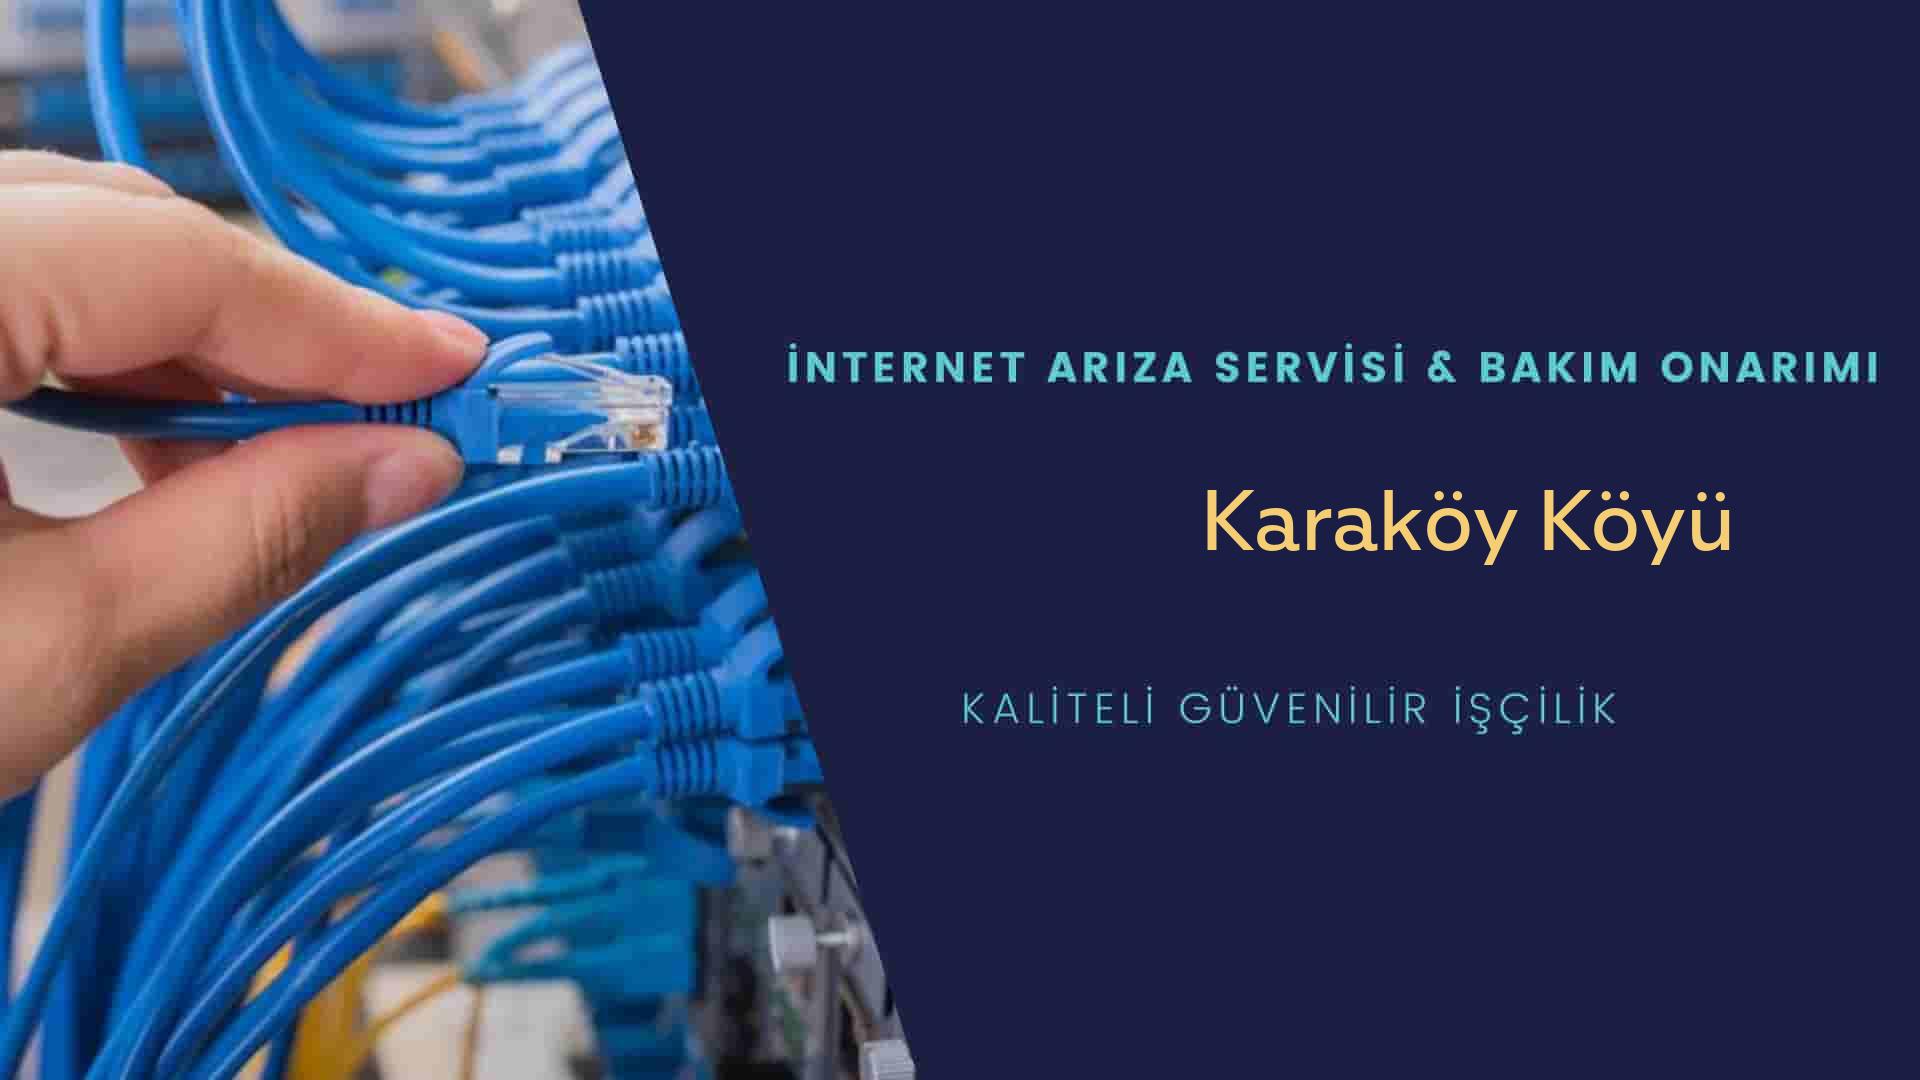 Karaköy Köyü internet kablosu çekimi yapan yerler veya elektrikçiler mi? arıyorsunuz doğru yerdesiniz o zaman sizlere 7/24 yardımcı olacak profesyonel ustalarımız bir telefon kadar yakındır size.